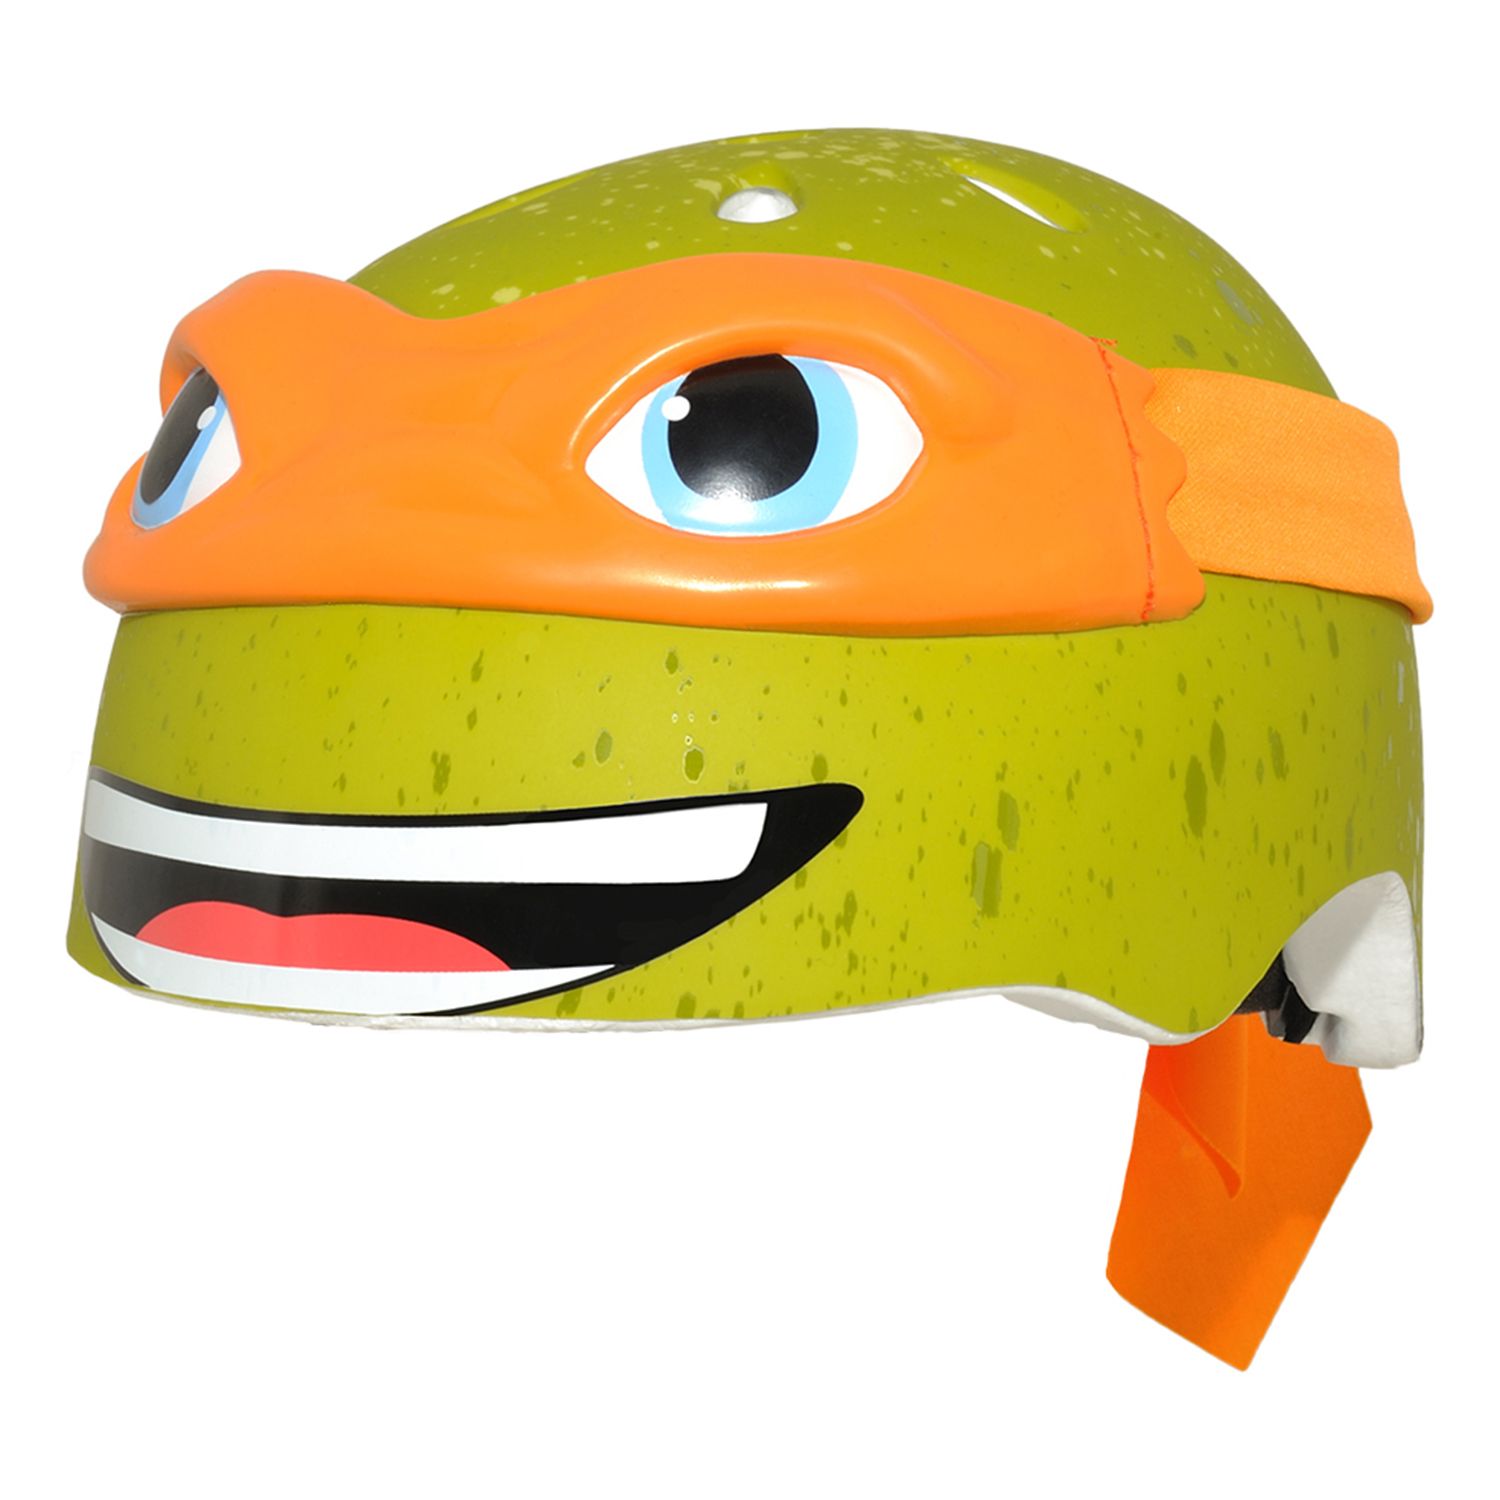 ninja turtle bike helmet